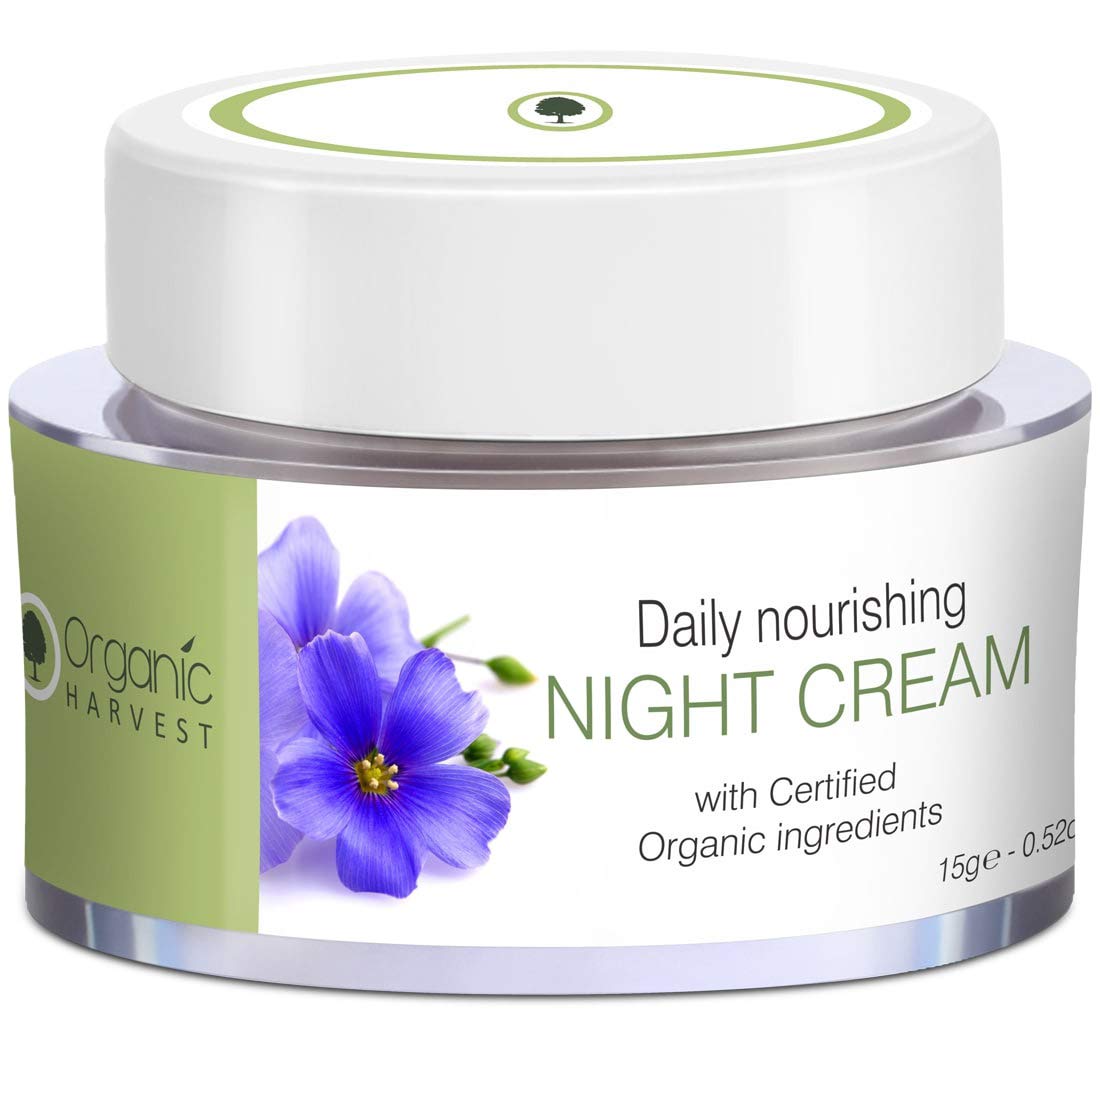 Daily nourishing night cream by Organic Harvest